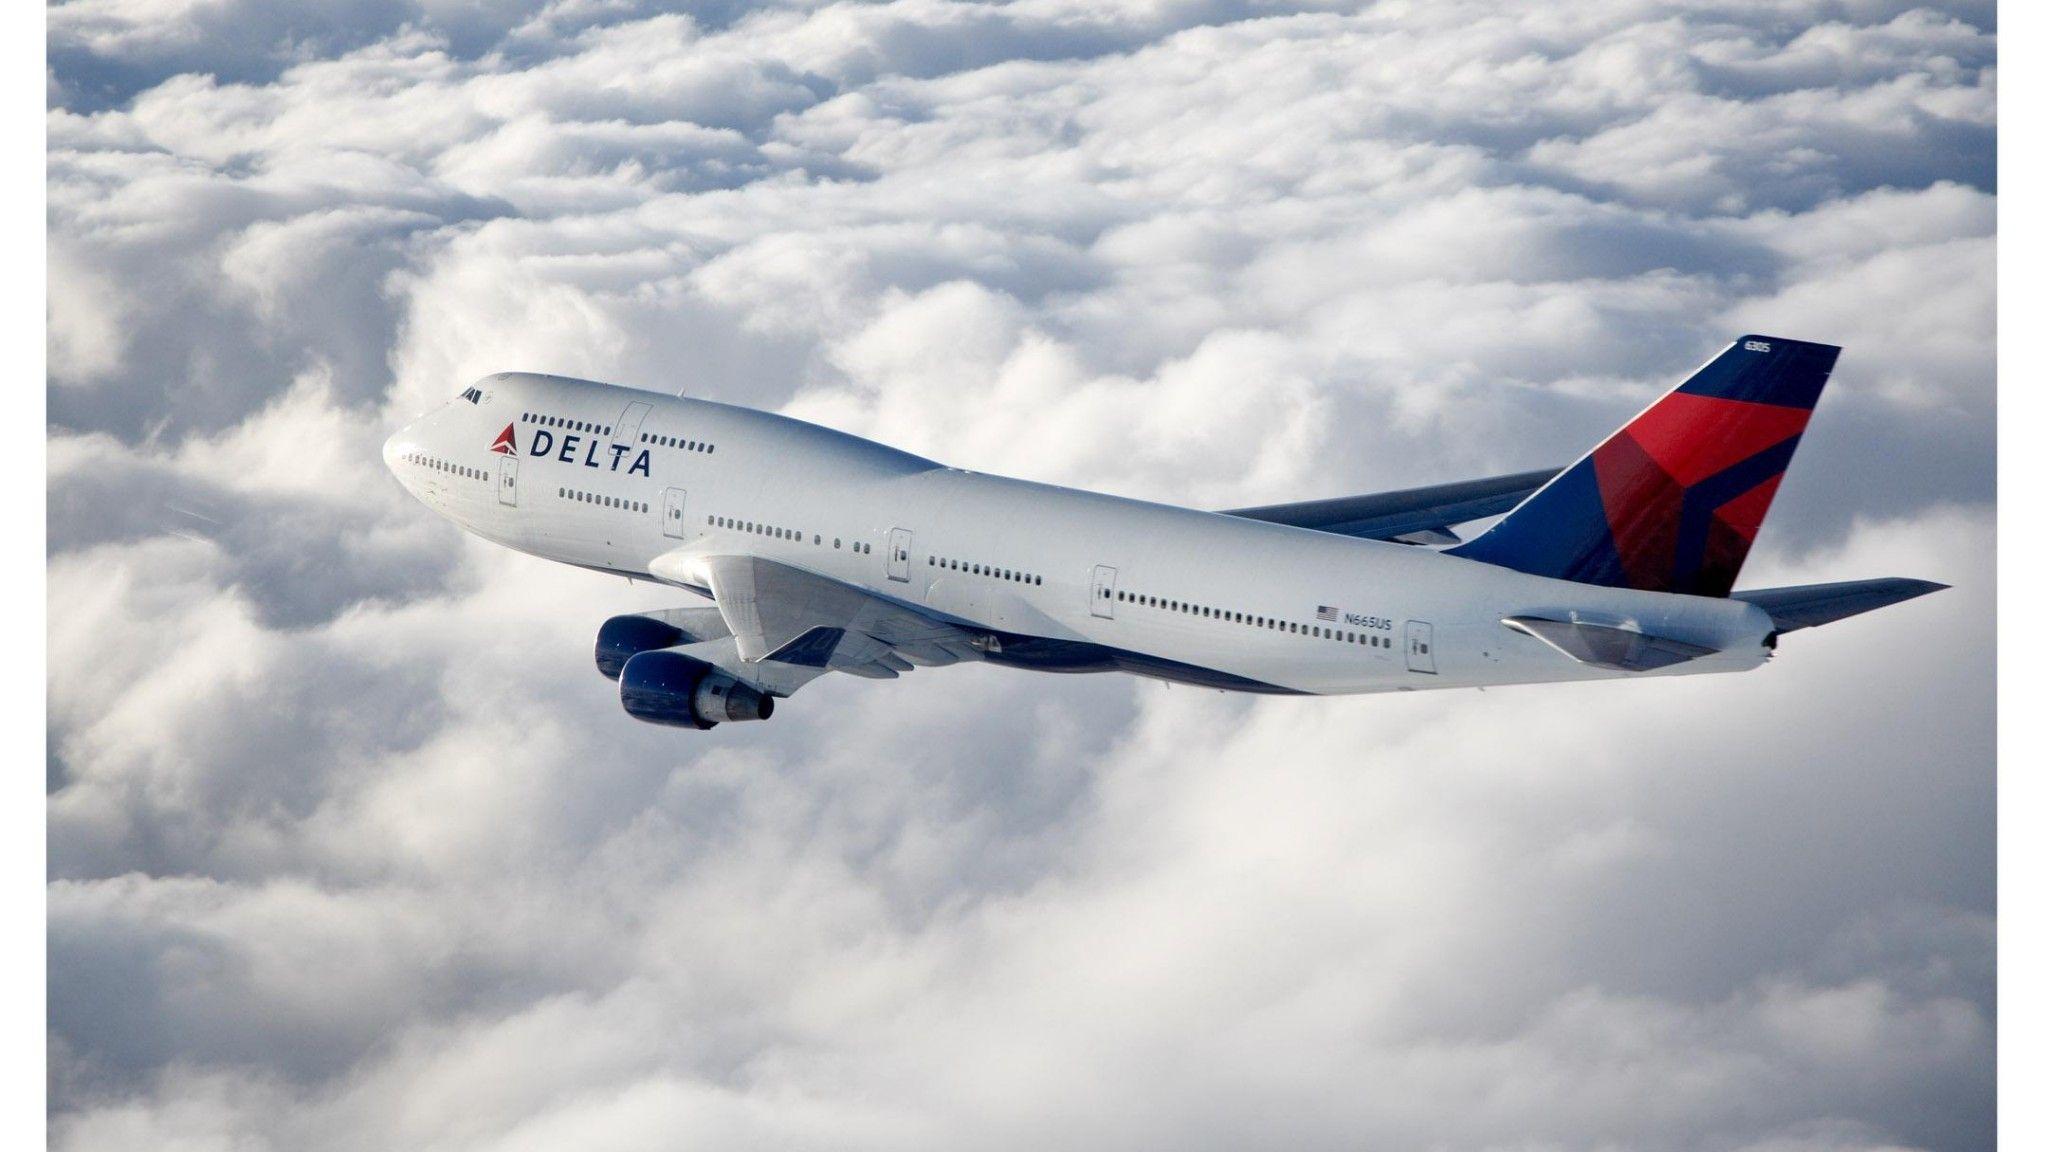 Boeing 747 Delta Airlines HD desktop wallpaper, Widescreen, High